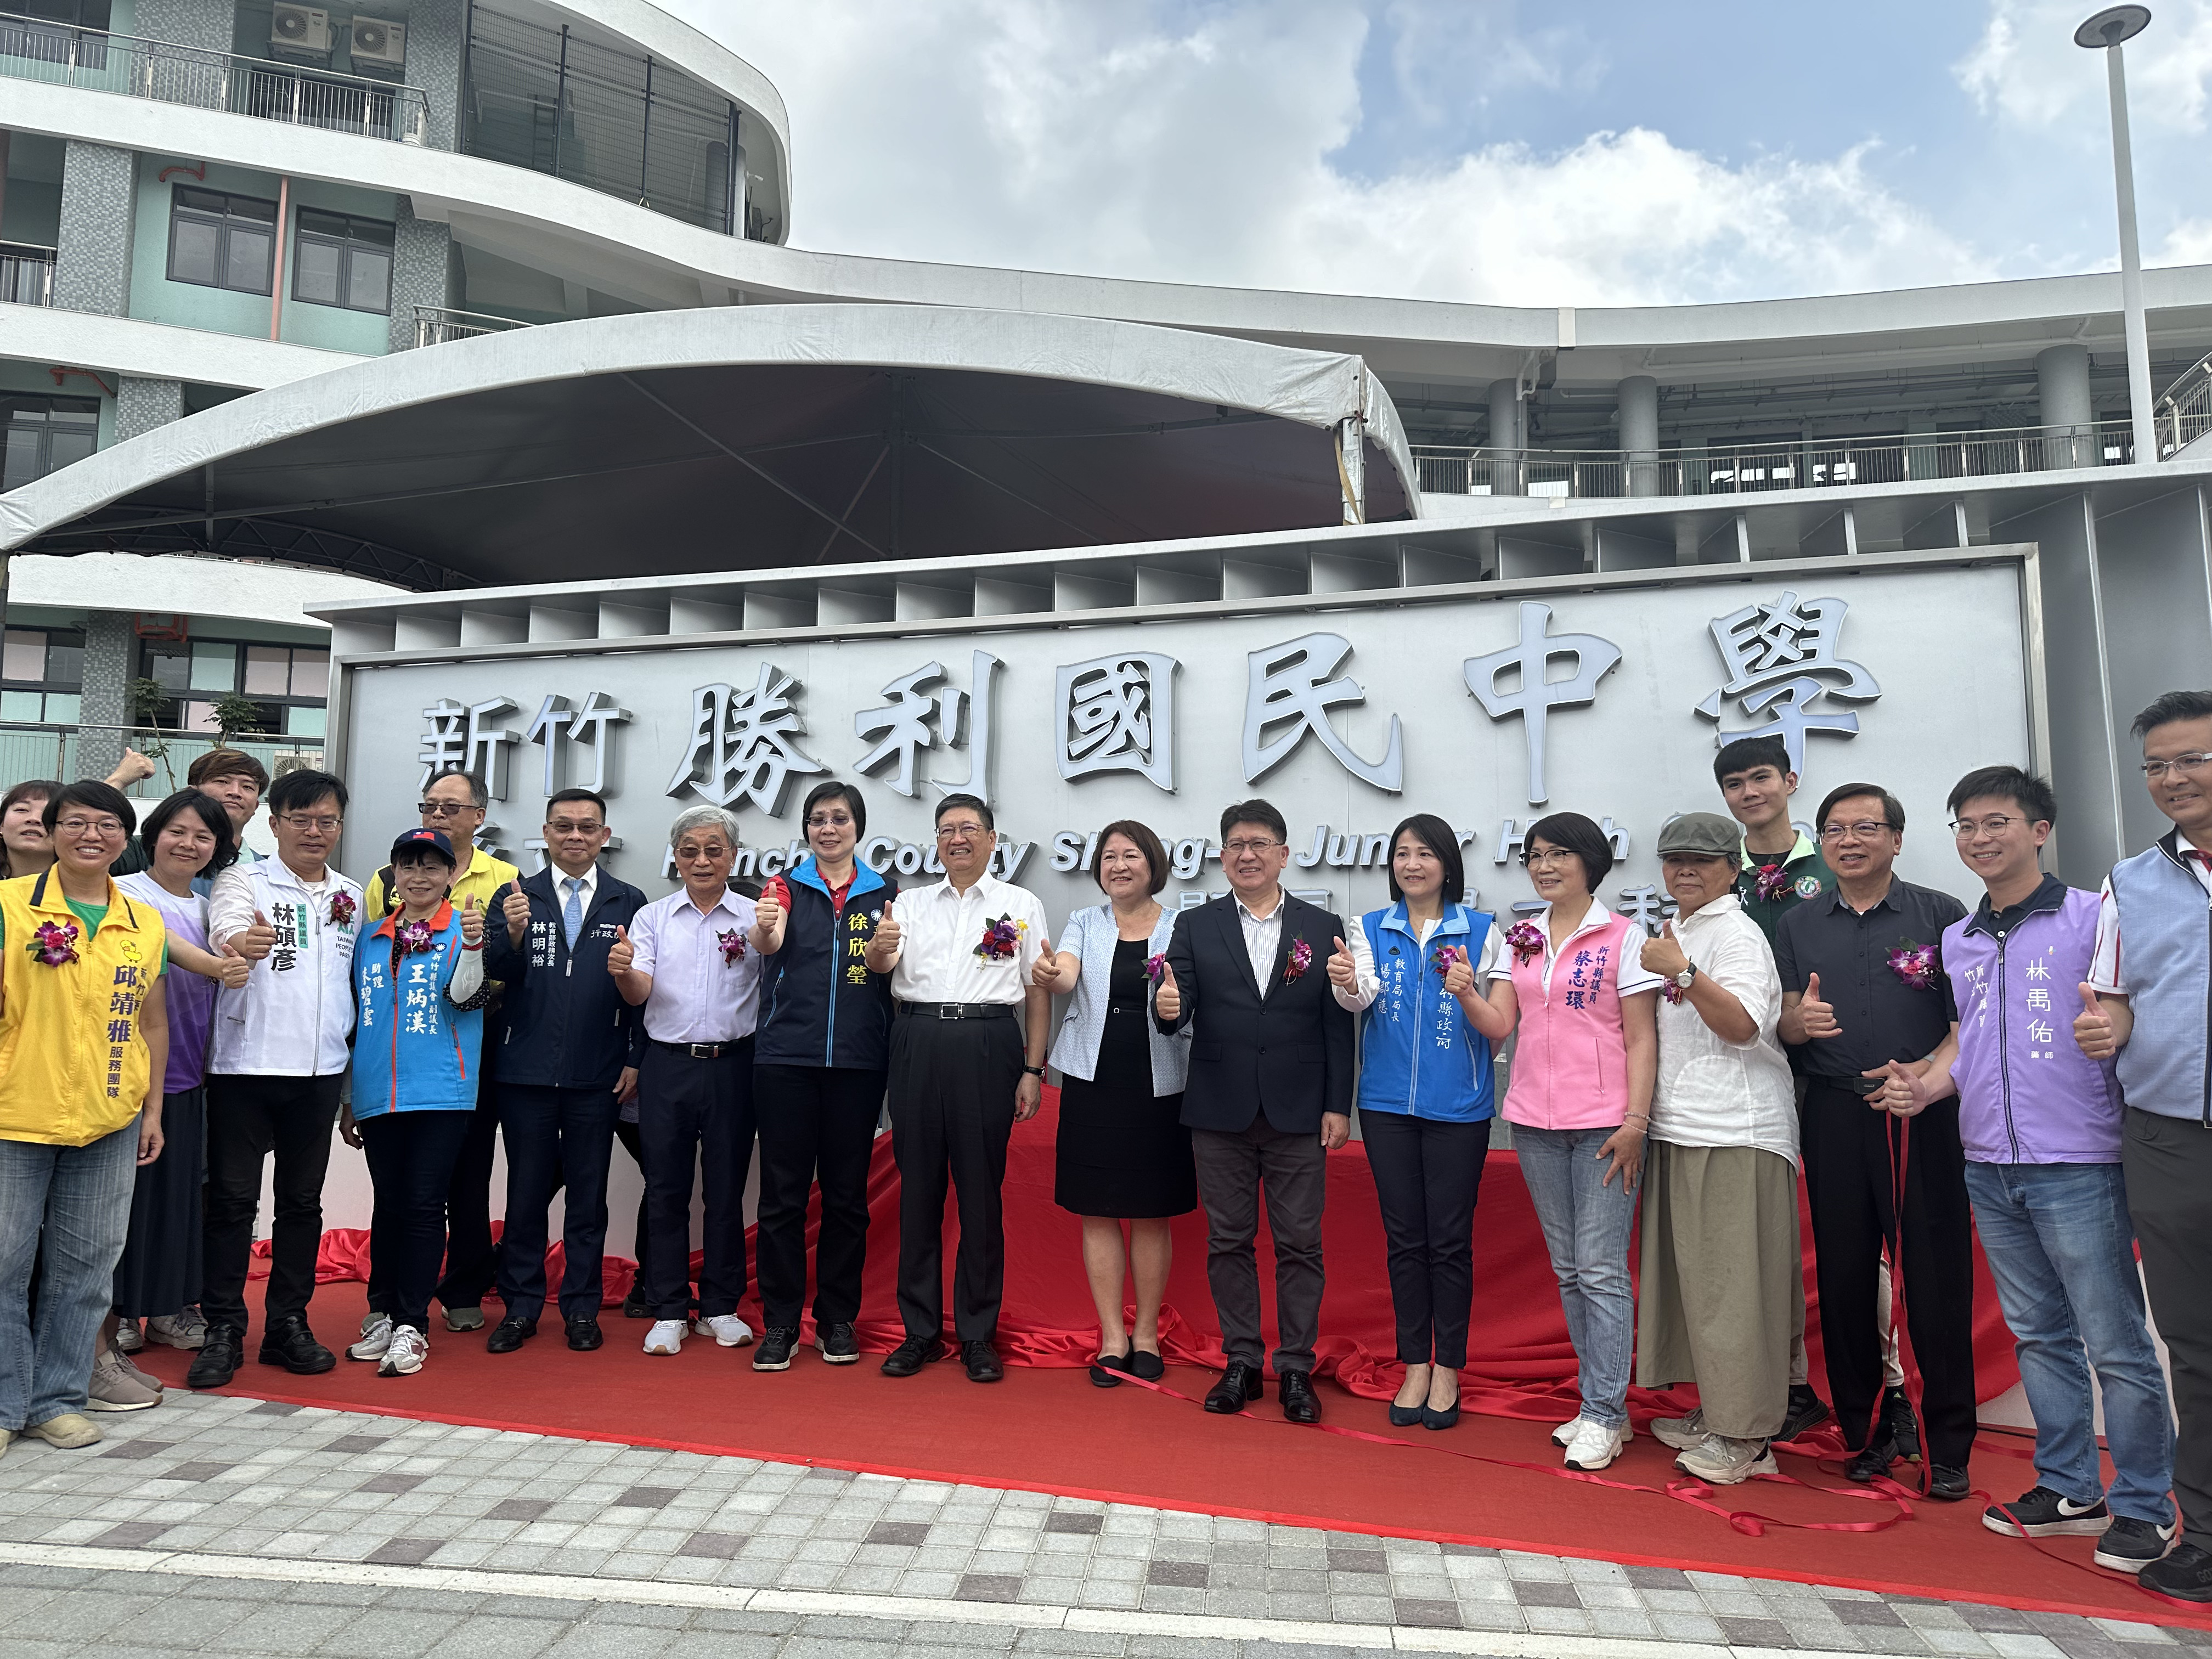 新竹县长杨文科为胜利国中揭牌，并承诺持续加大对教育投资。记者巫鸿玮／摄影